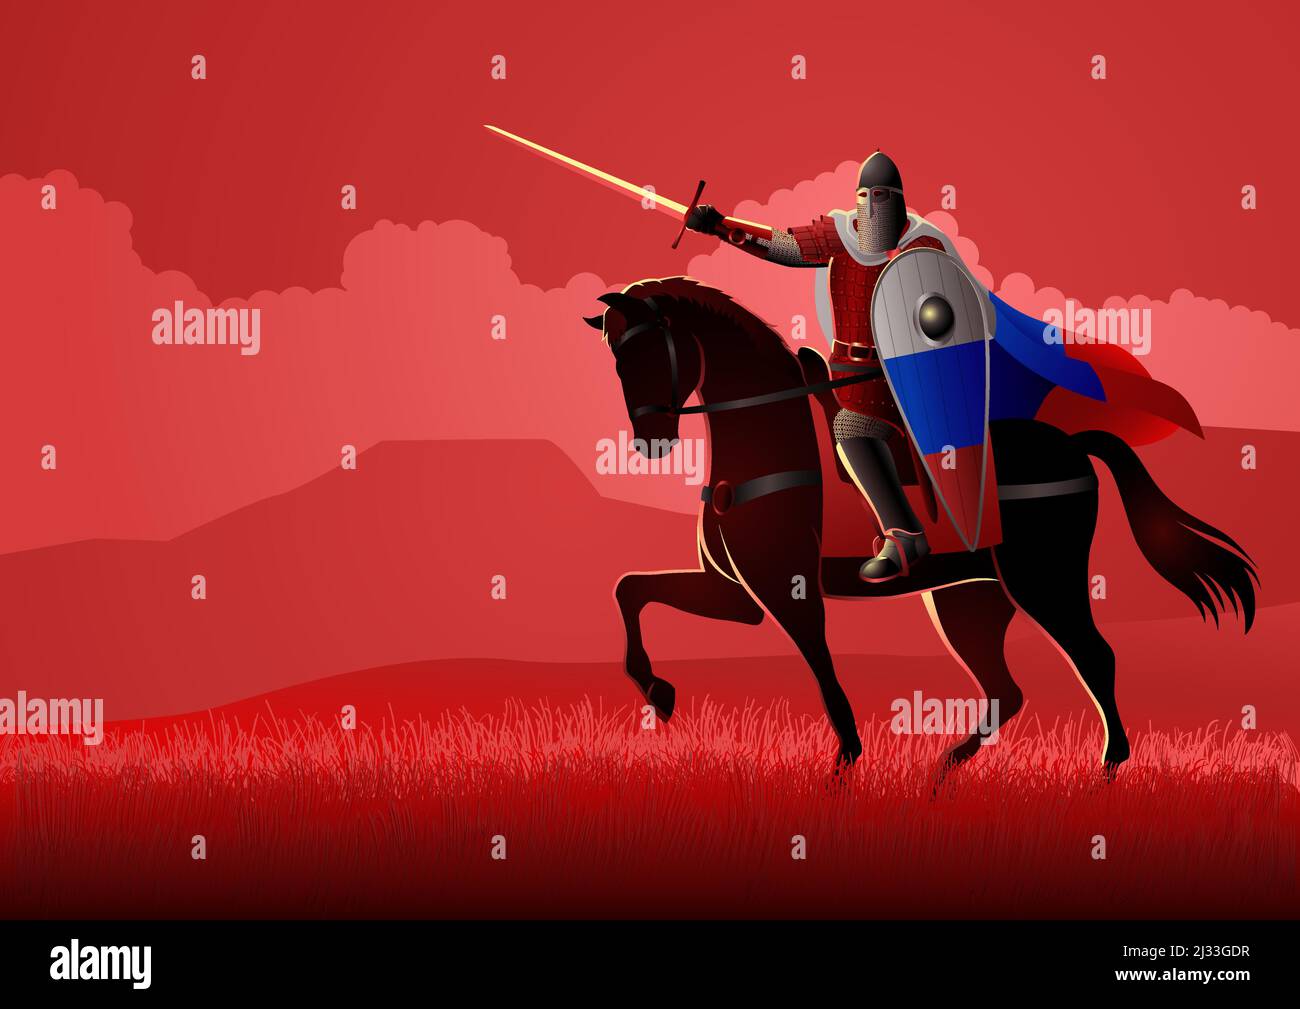 Vector illustration of medieval Slavic knight on horseback Stock Vector